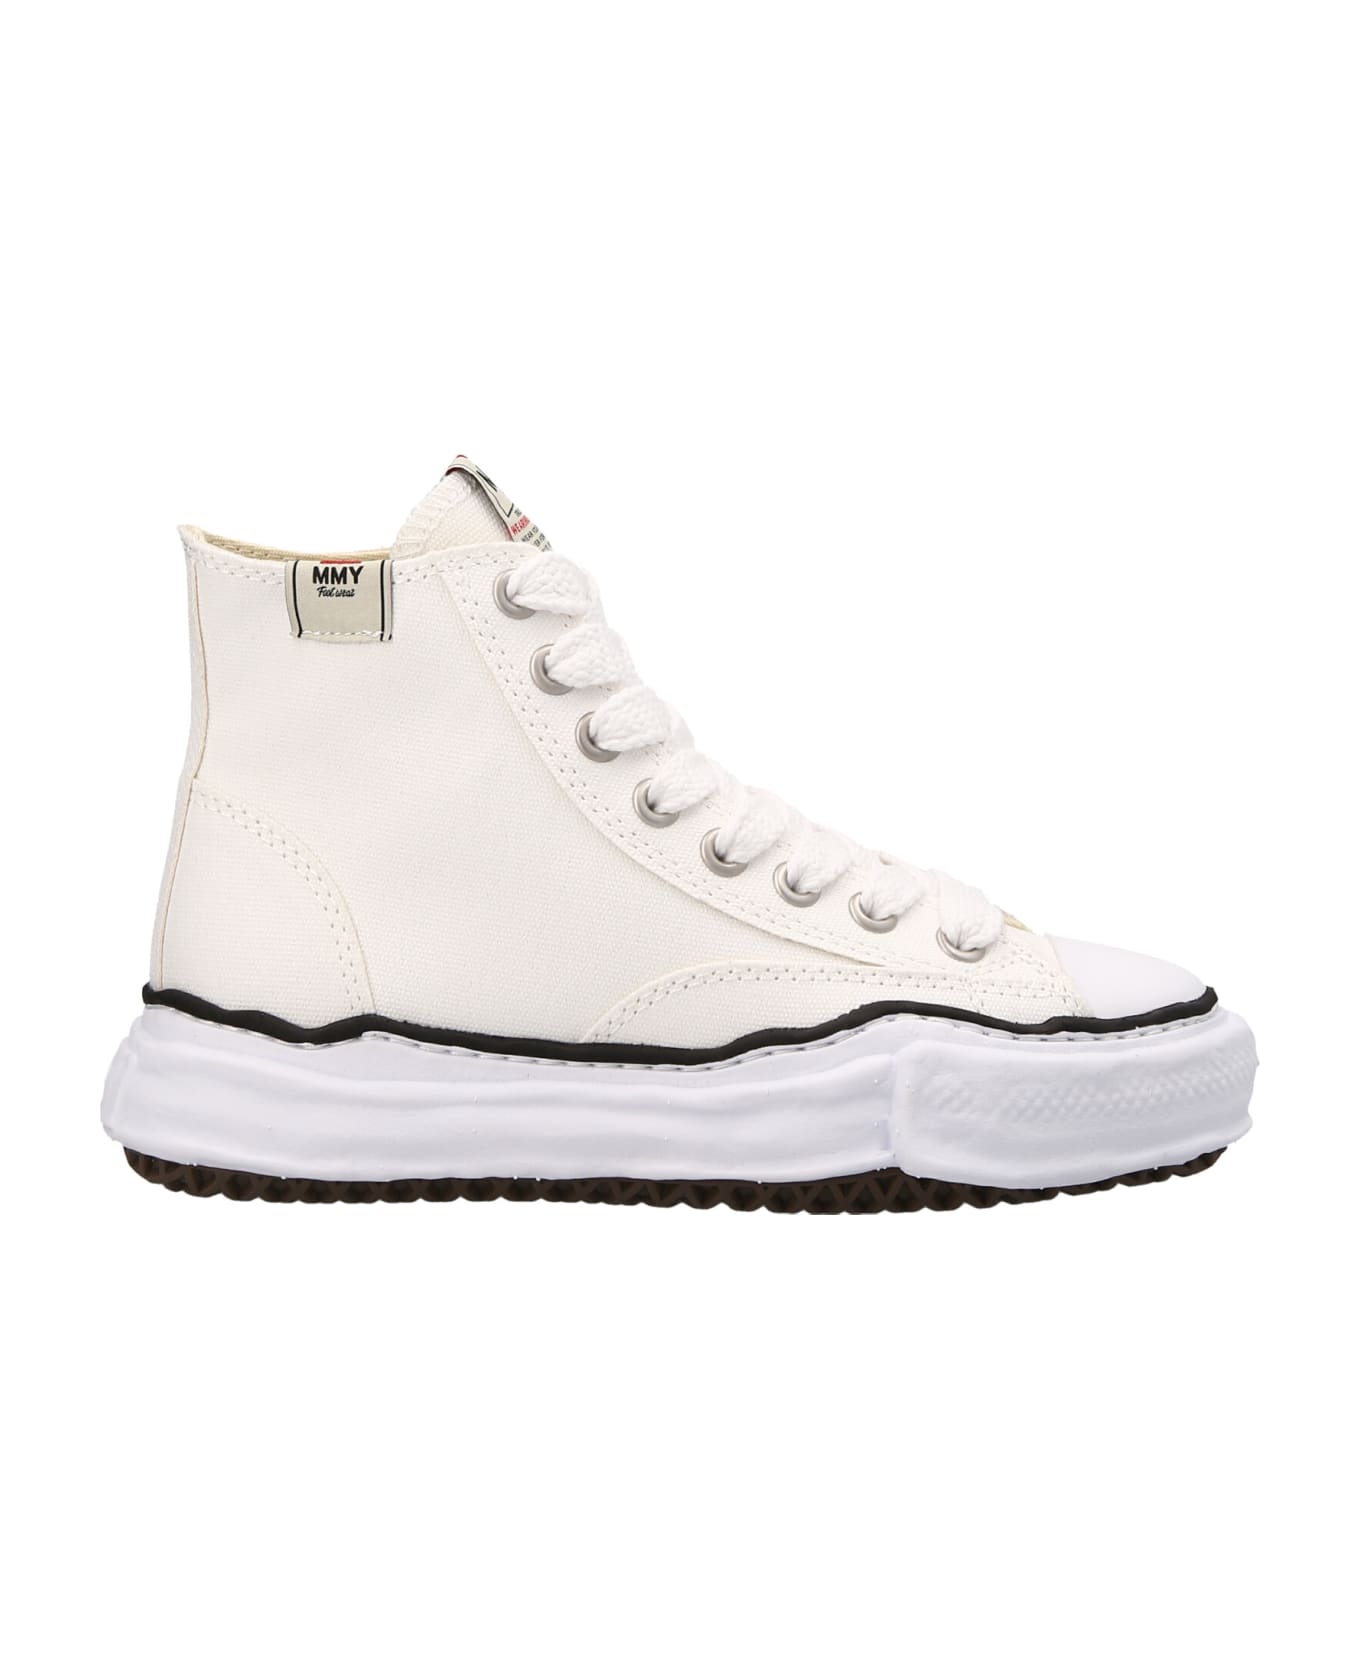 Mihara Yasuhiro 'peterson High' Sneakers - White